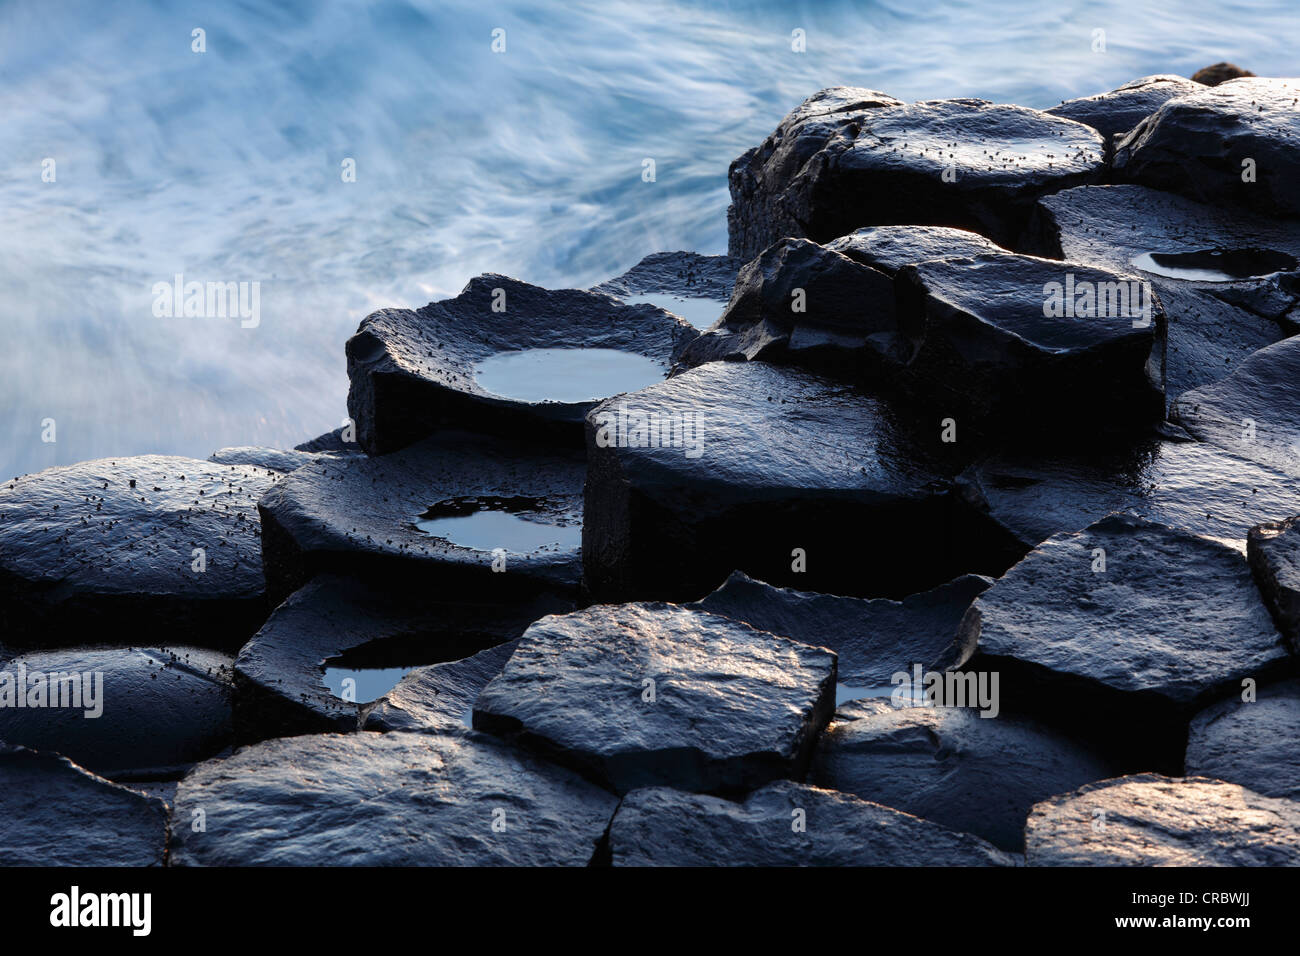 Colonne basaltiche, Giant's Causeway Causeway Coast, County Antrim, Irlanda del Nord, Regno Unito, Europa Foto Stock